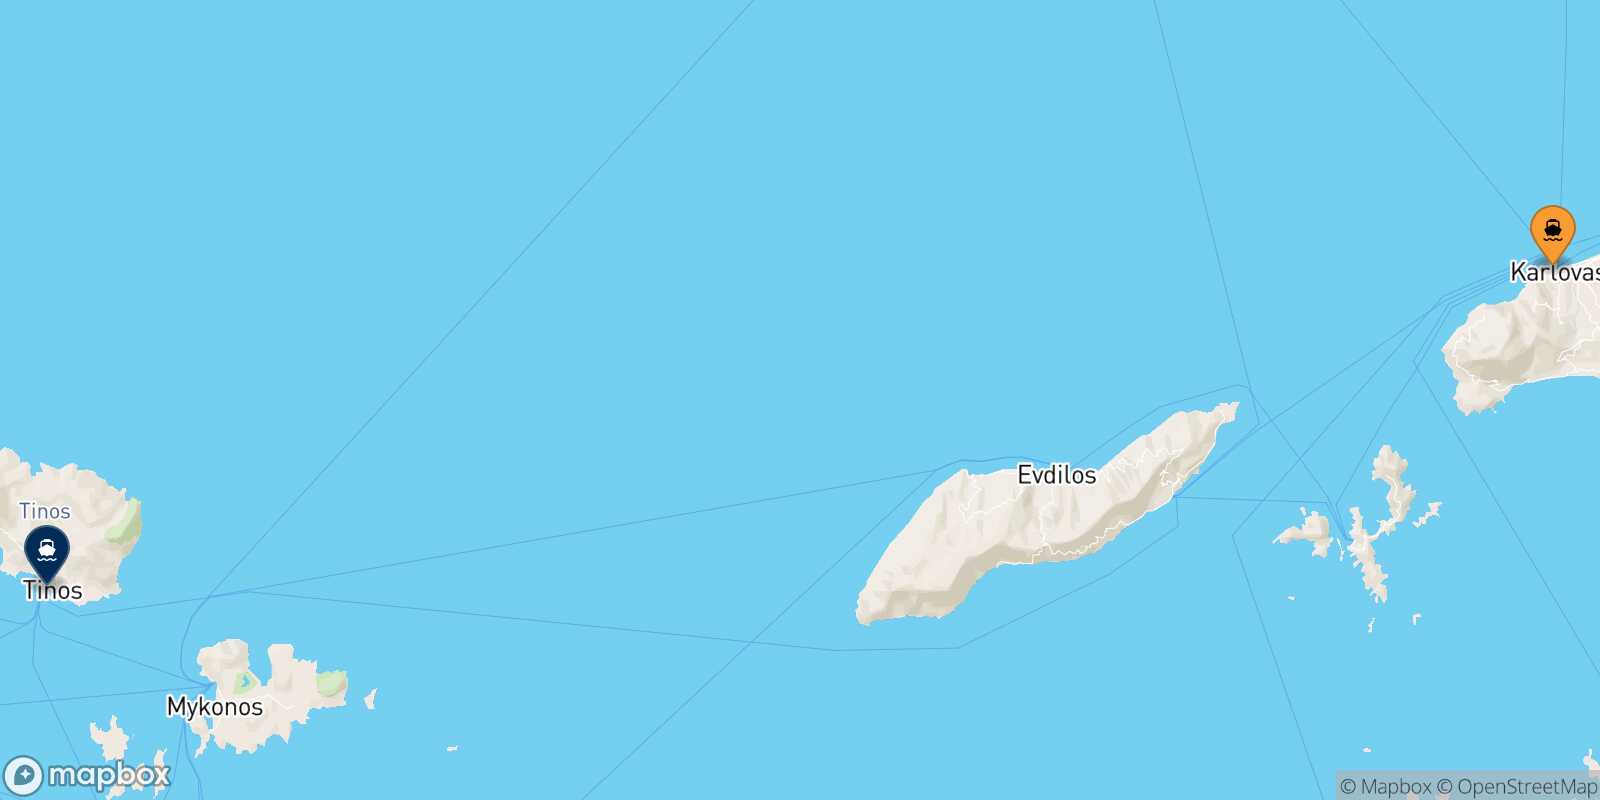 Karlovassi (Samos) Tinos route map